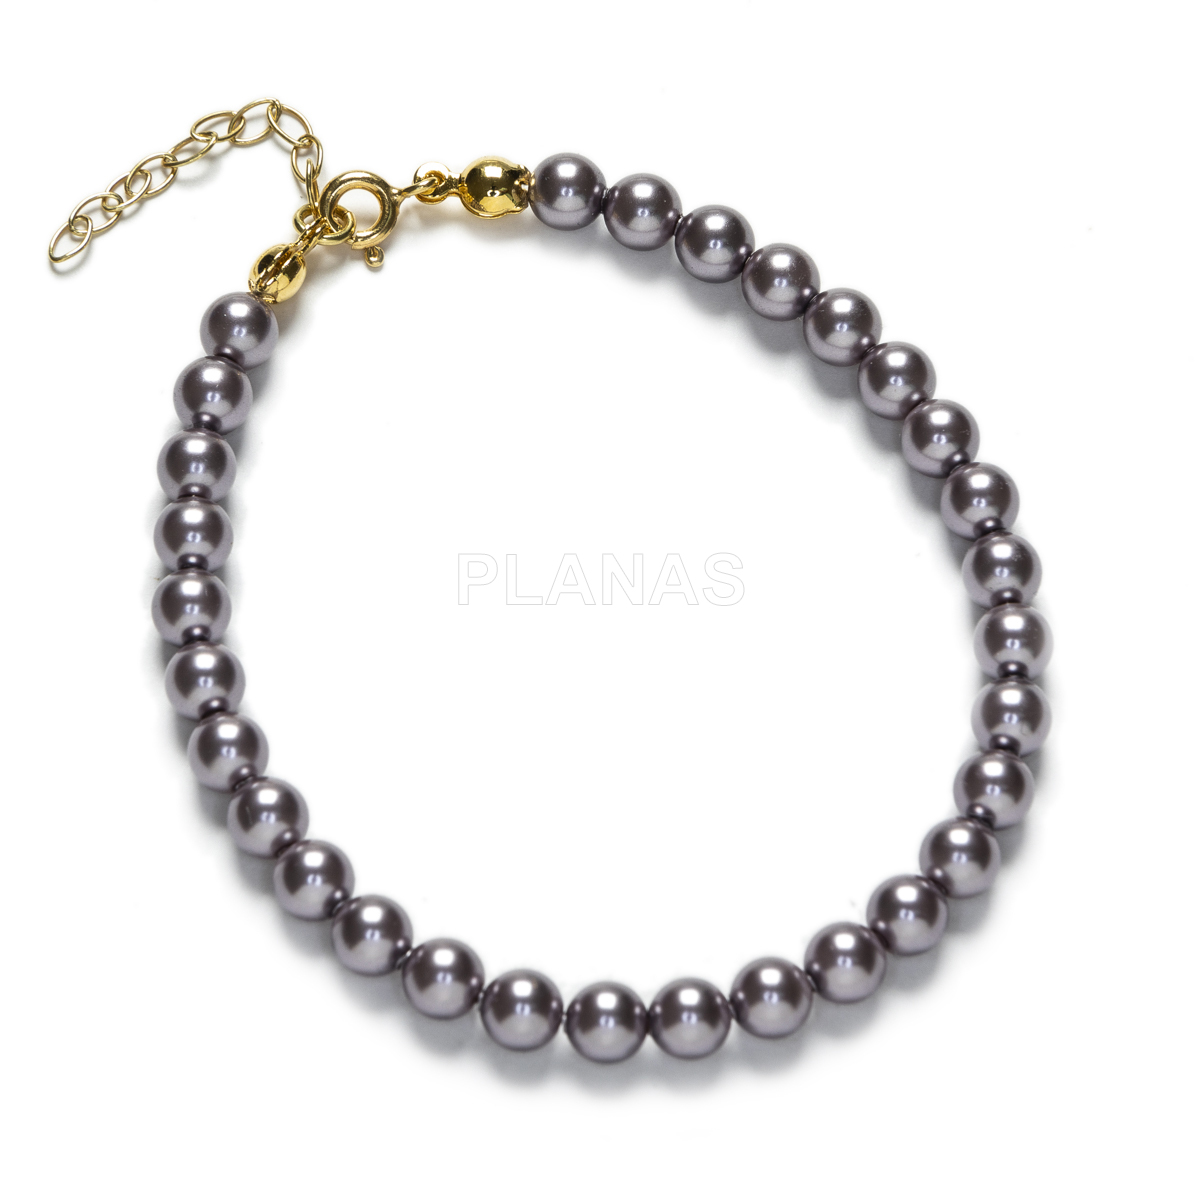 Conjunto de Collar y Pulsera en Plata de ley y Baño Oro Perlas de primera calidad en 5mm. Color Mauve.